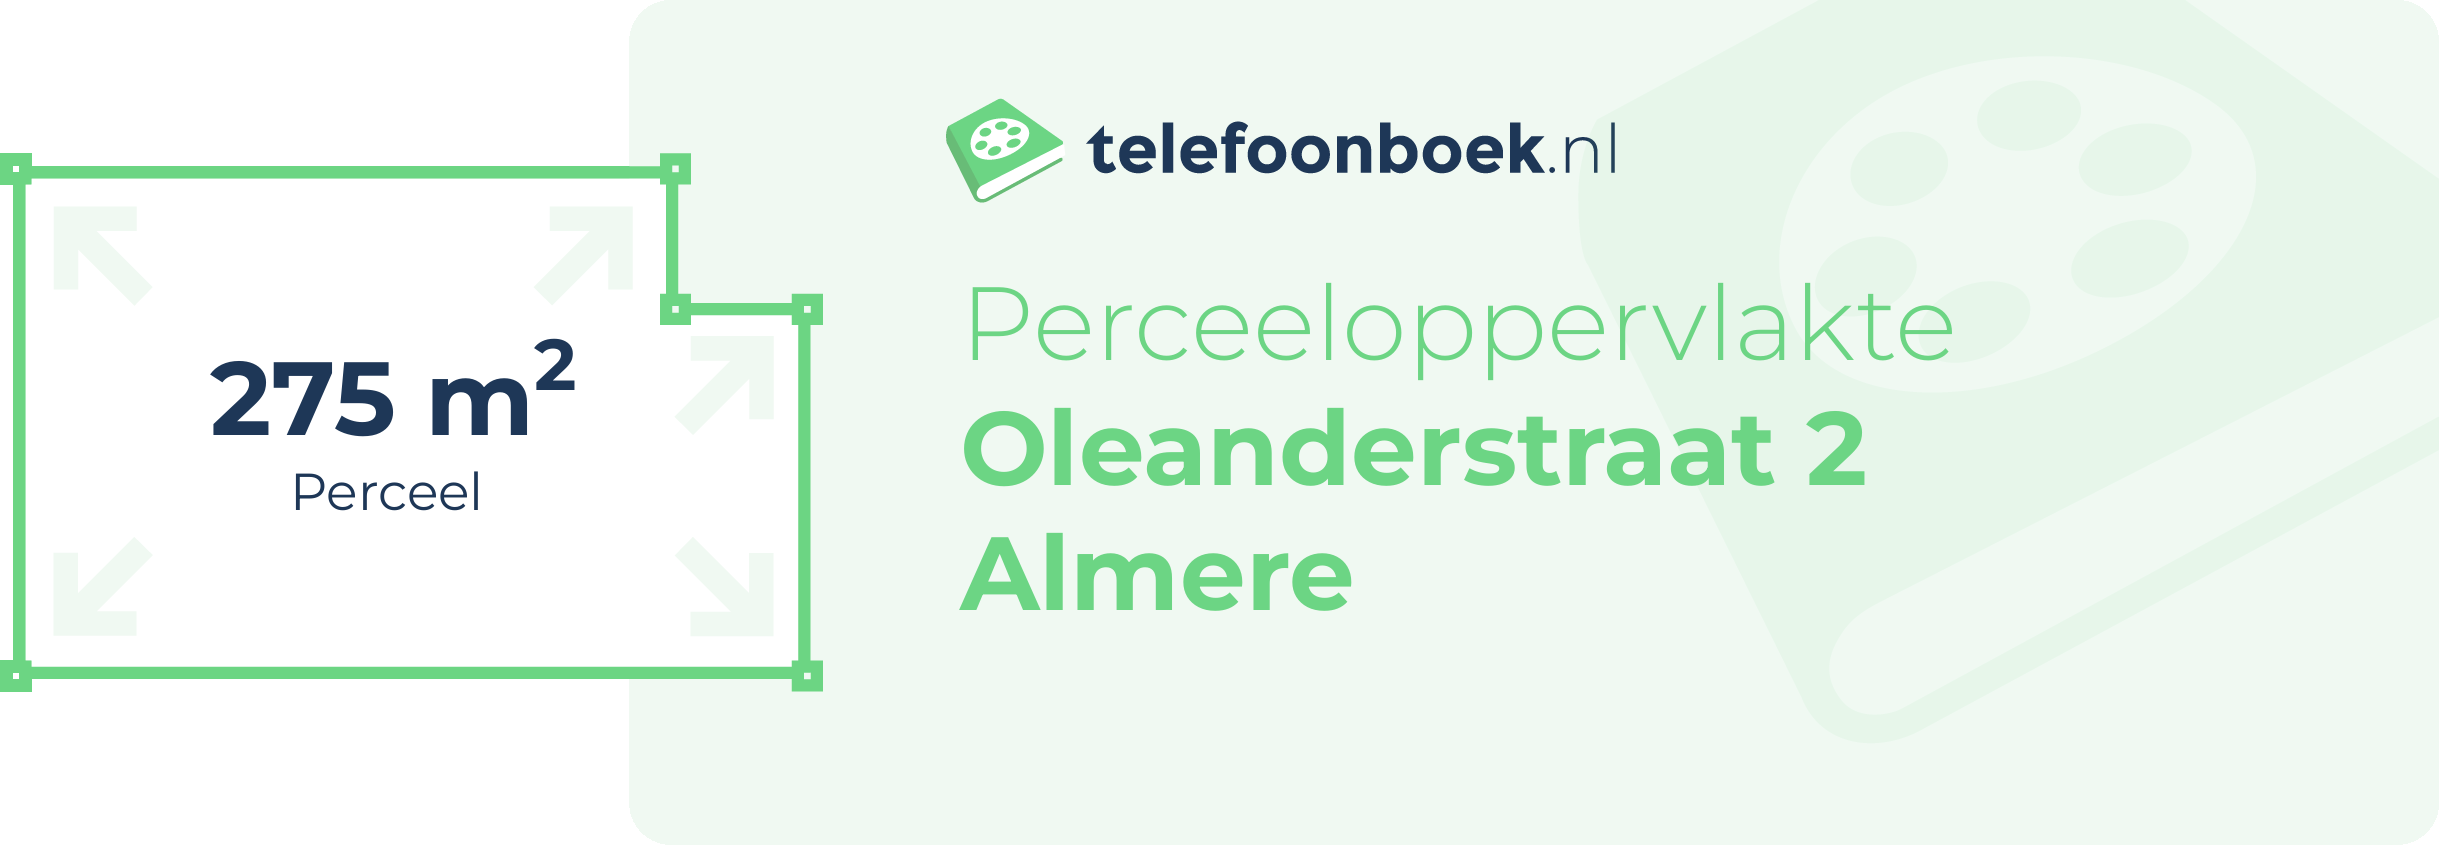 Perceeloppervlakte Oleanderstraat 2 Almere